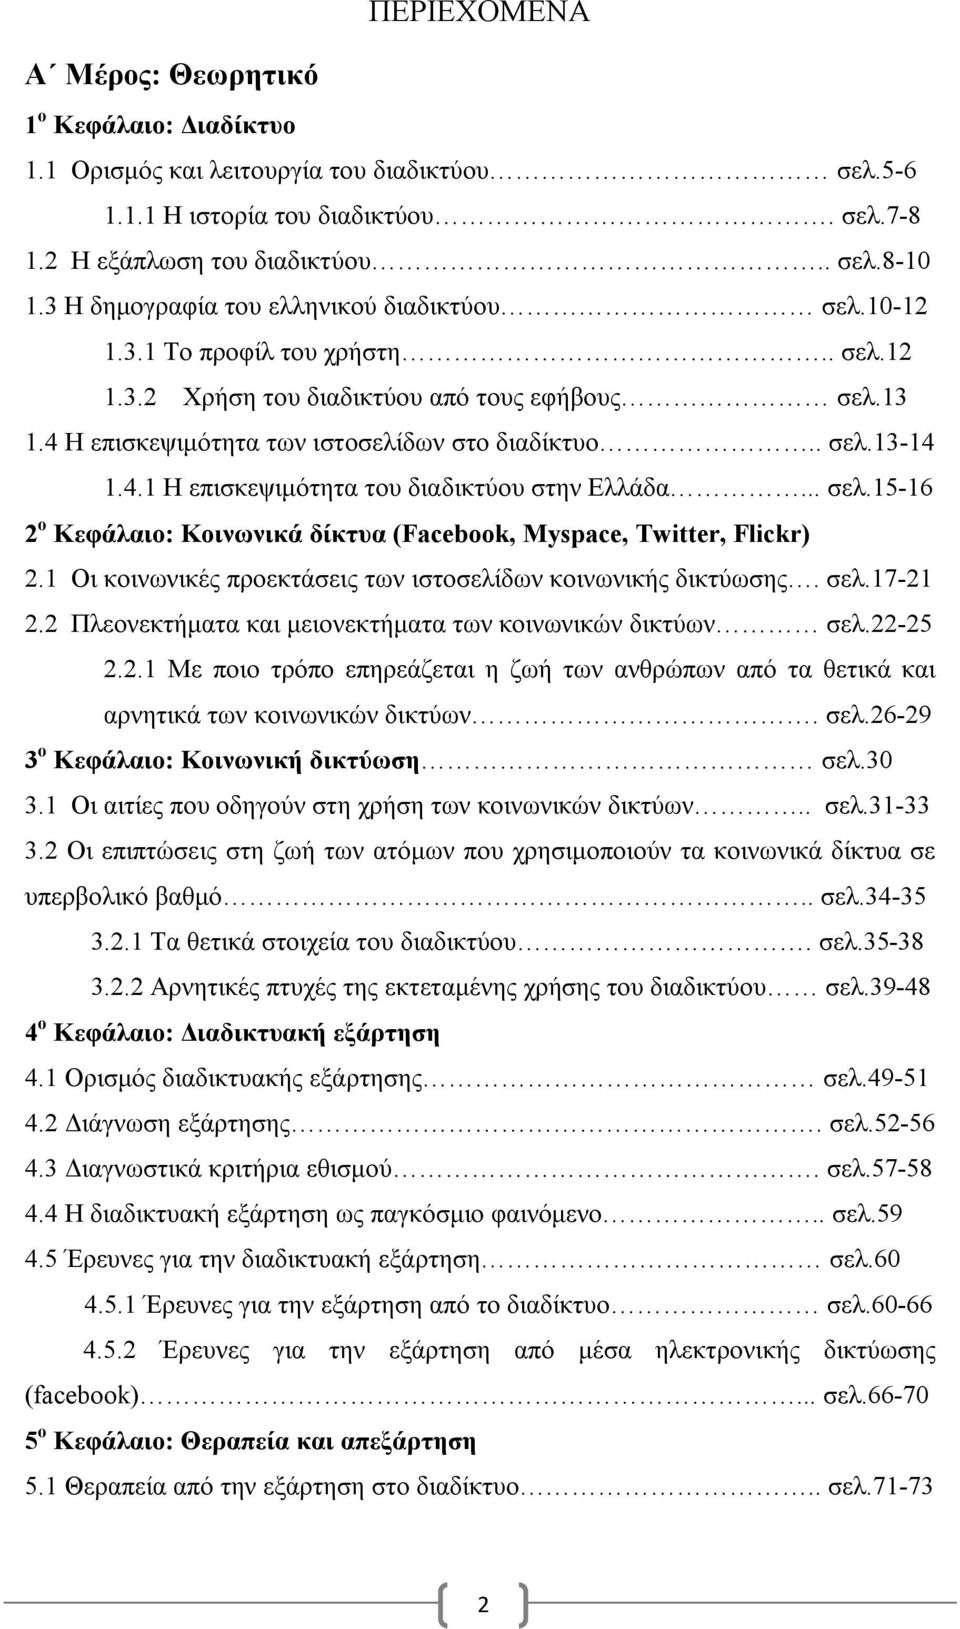 4.1 Η επισκεψιμότητα του διαδικτύου στην Ελλάδα... σελ.15-16 2 ο Κεφάλαιο: Κοινωνικά δίκτυα (Facebook, Myspace, Twitter, Flickr) 2.1 Οι κοινωνικές προεκτάσεις των ιστοσελίδων κοινωνικής δικτύωσης.